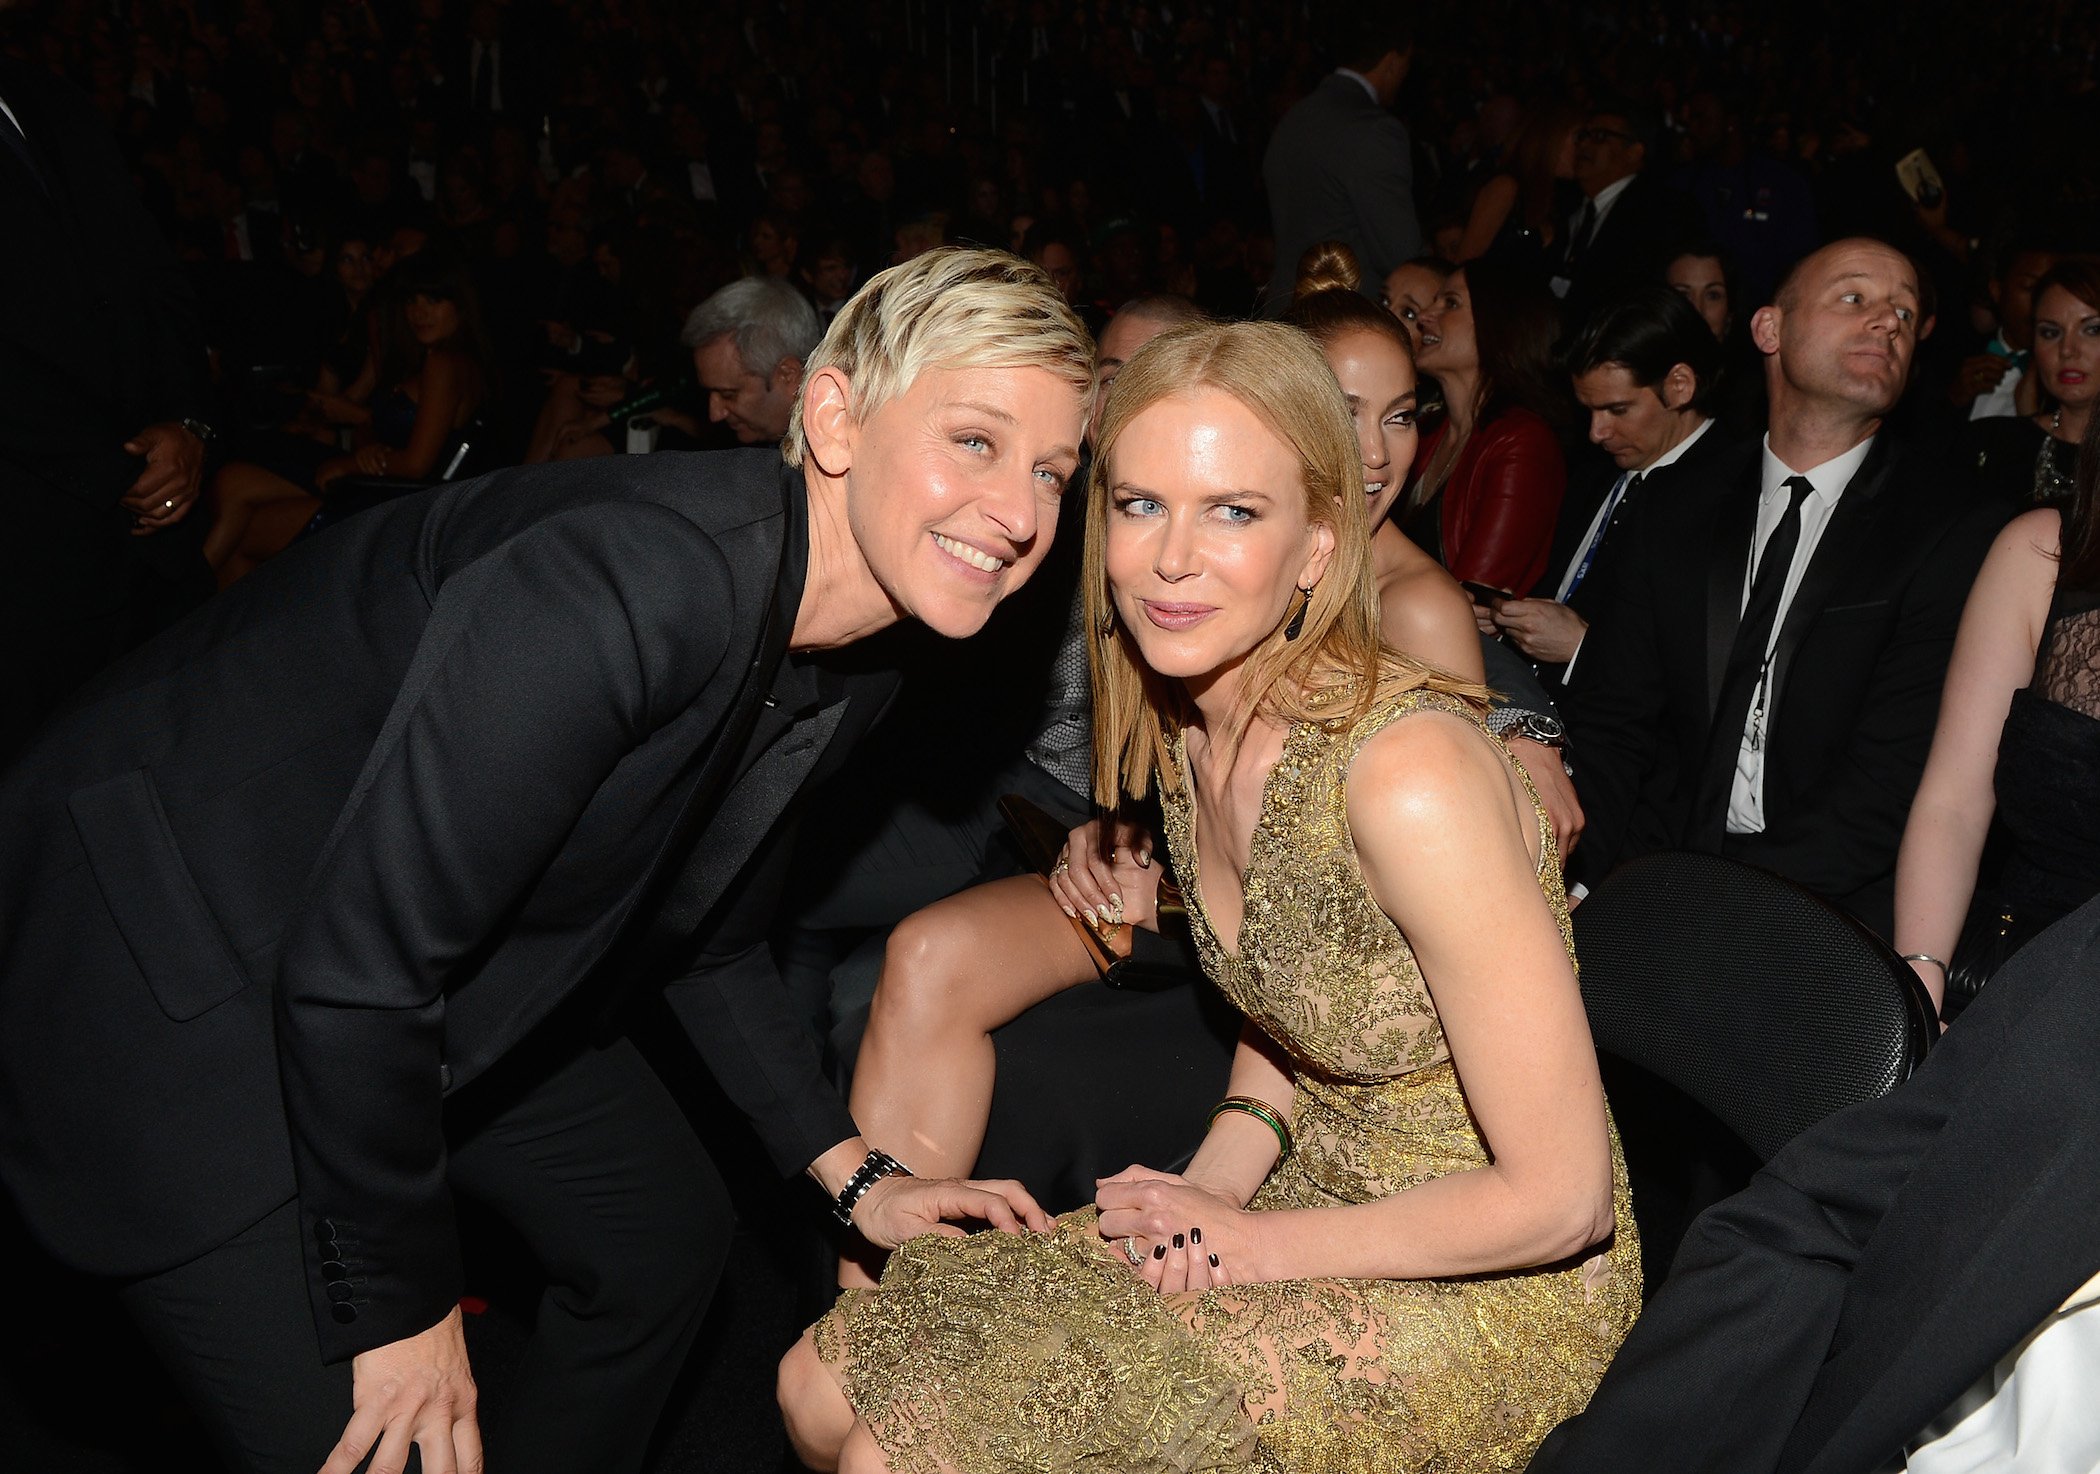 Ellen DeGeneres from 'The Ellen DeGeneres Show' and Nicole Kidman